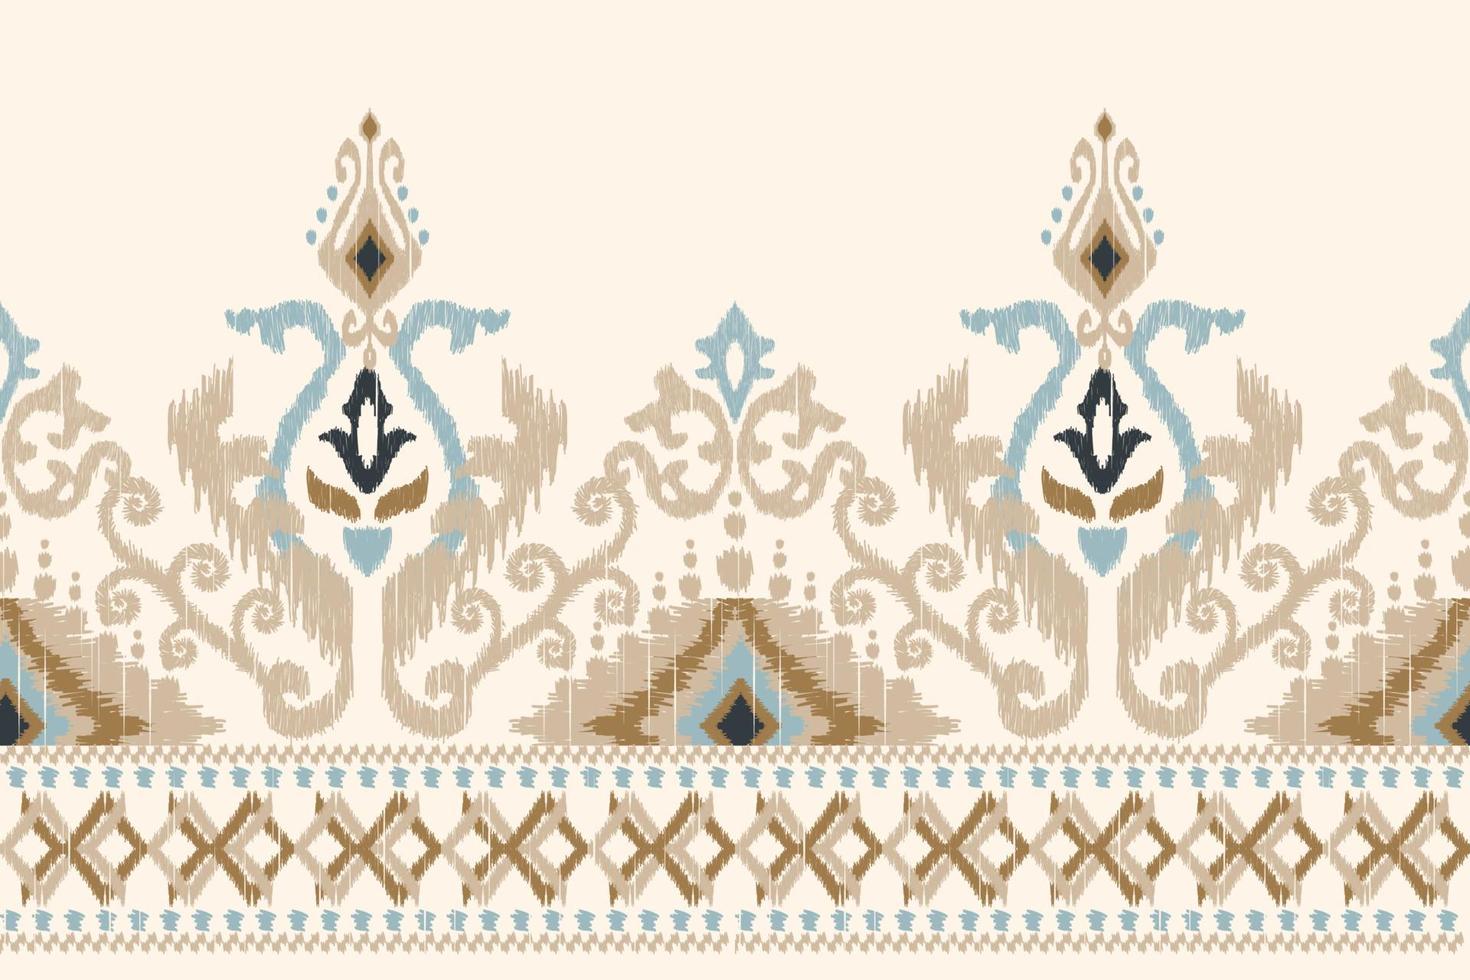 ikat blommig paisley broderi på vit bakgrund.geometrisk etnisk orientalisk mönster traditionell.aztec stil abstrakt vektor illustration.design för textur, tyg, kläder, inslagning, dekoration, sarong